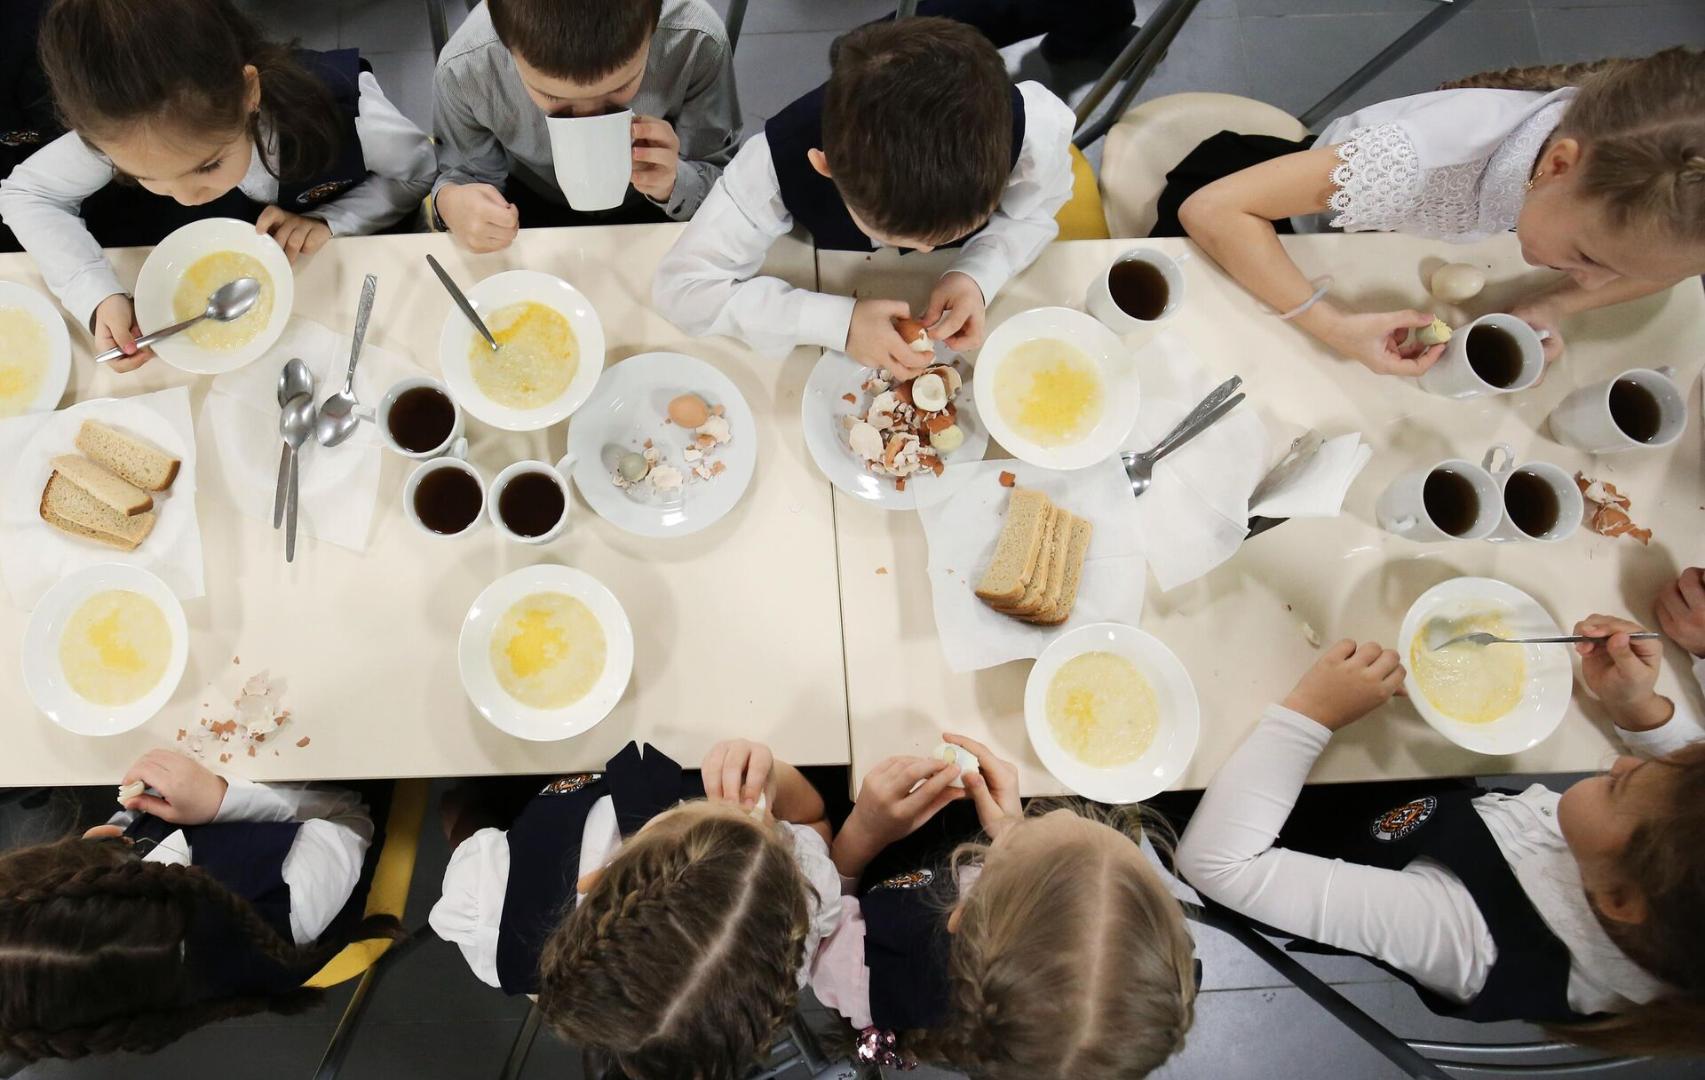 Бесплатное питание в школах – еще для одной категории учащихся